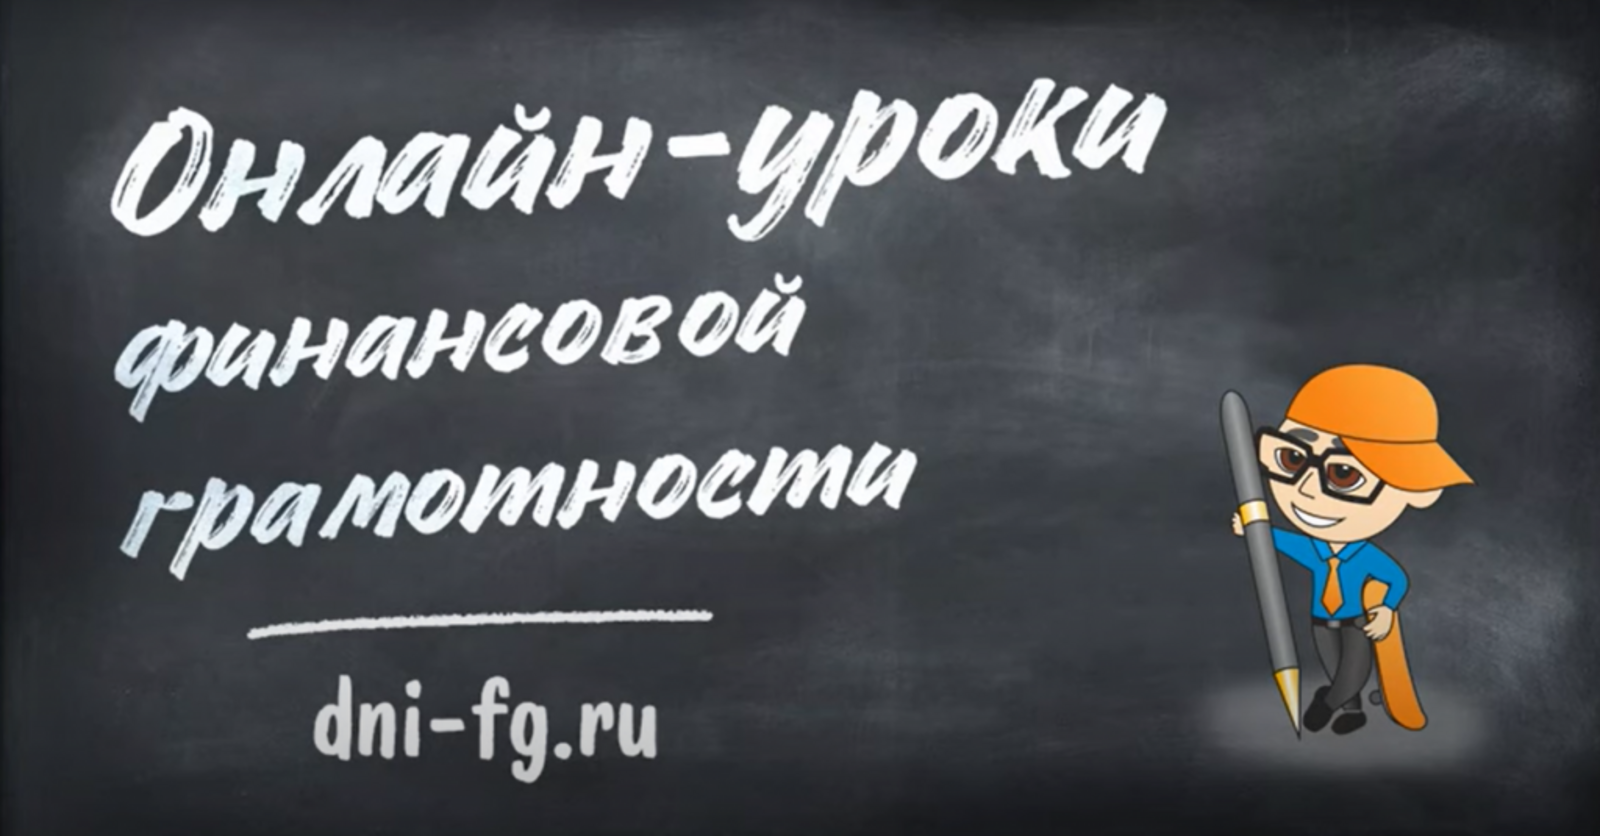 14 сентября стартует серия онлайн-уроков финансовой грамотности  Банка России